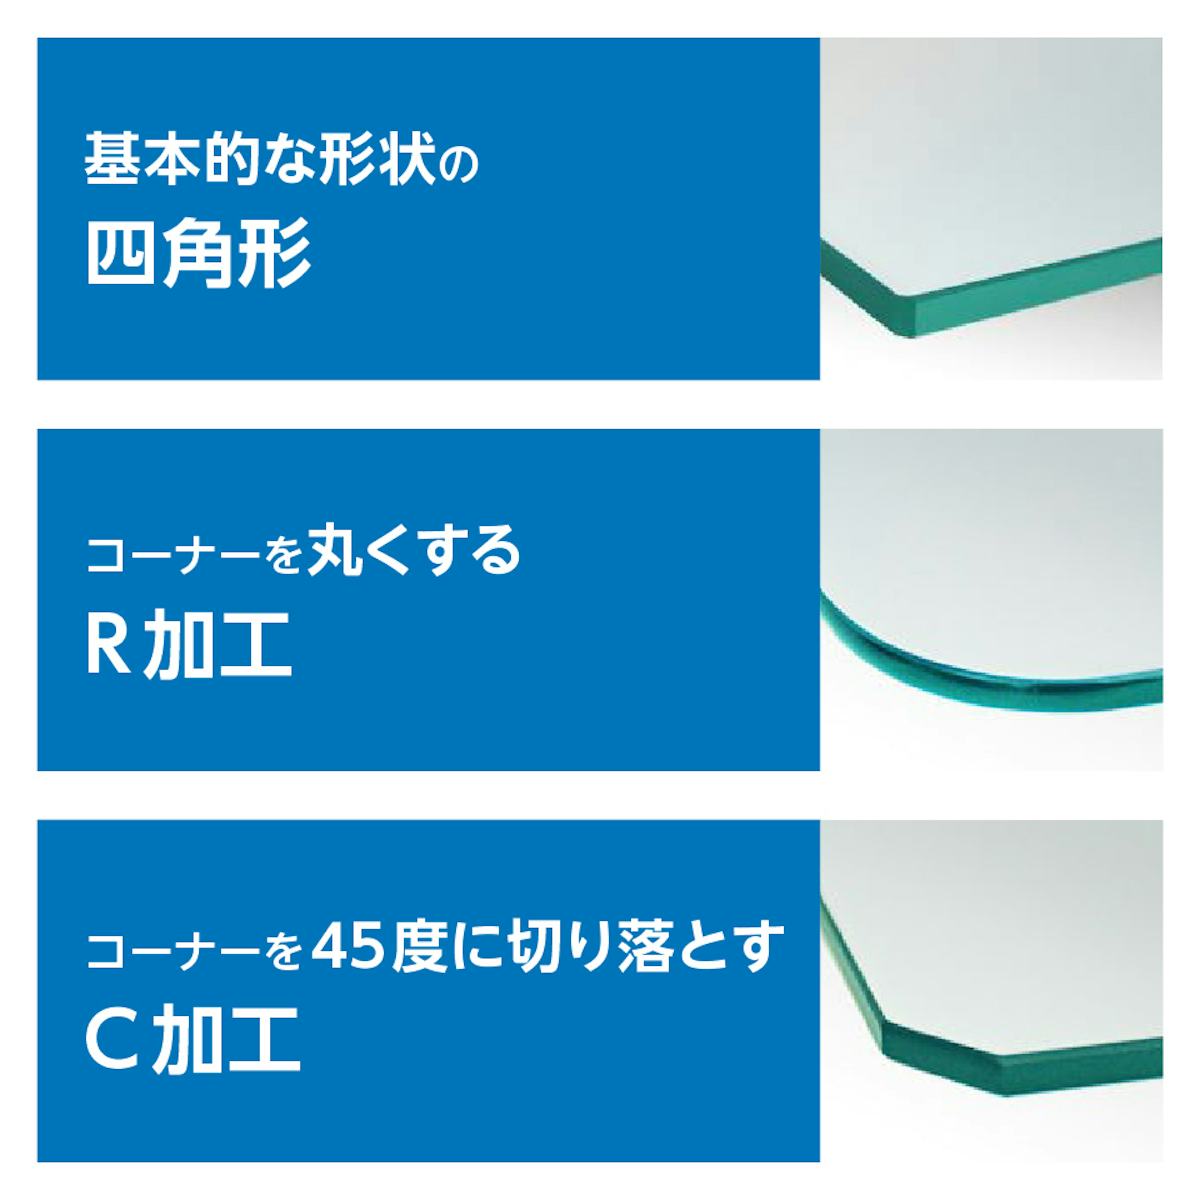 「強化ガラス：棚受けダボセット(木地用)」で使うガラス棚板は、角をR加工やC加工できる